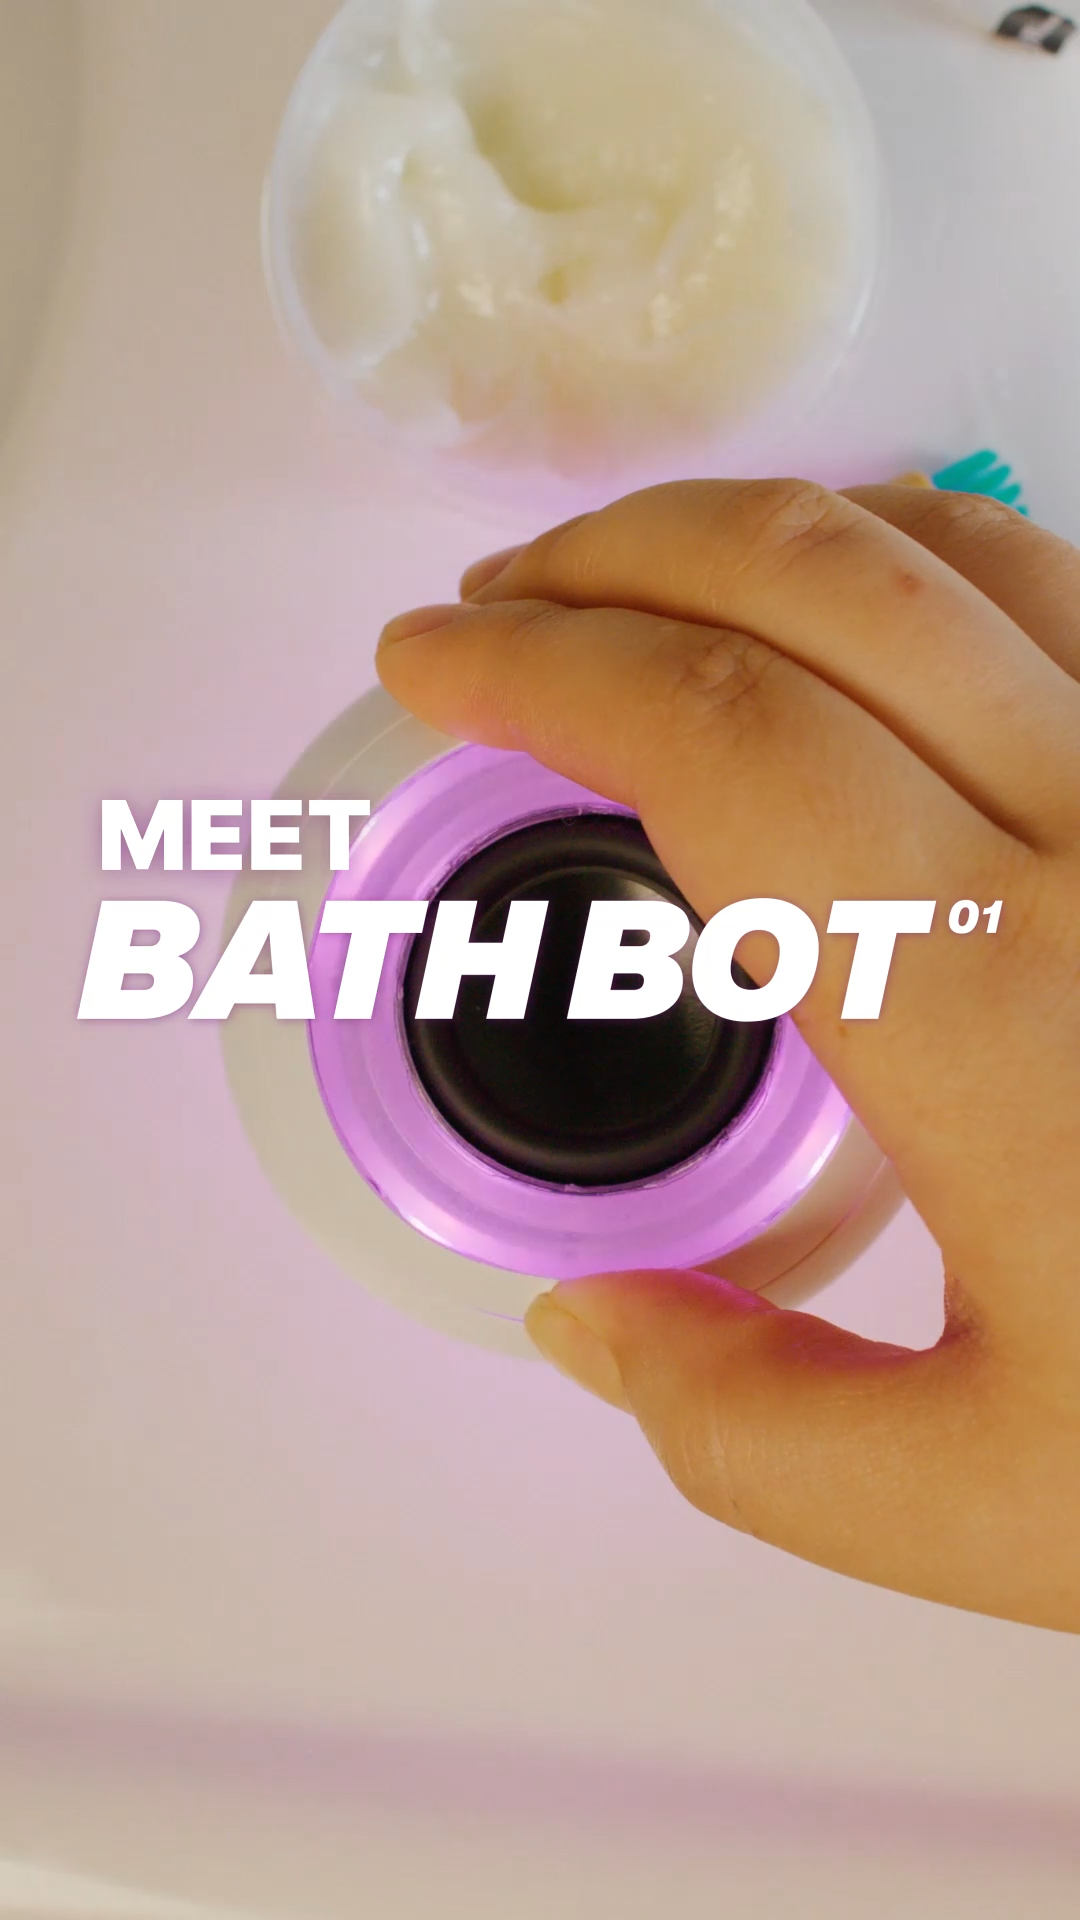 Story: WBBD 24 - Bath Bot